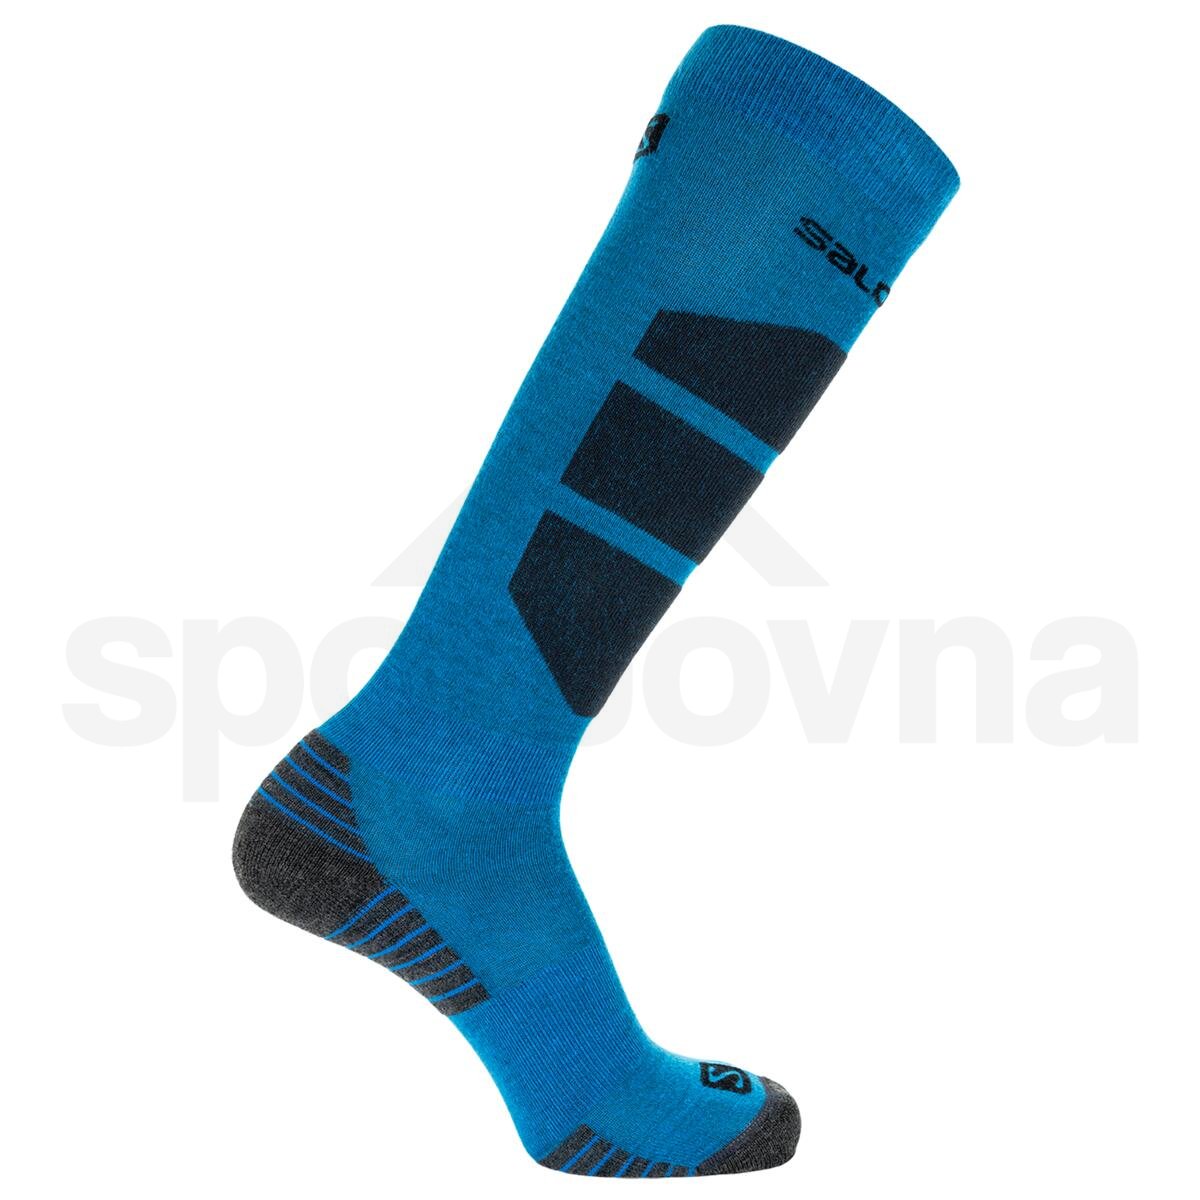 Ponožky Salomon COMFORT - modrá/černá